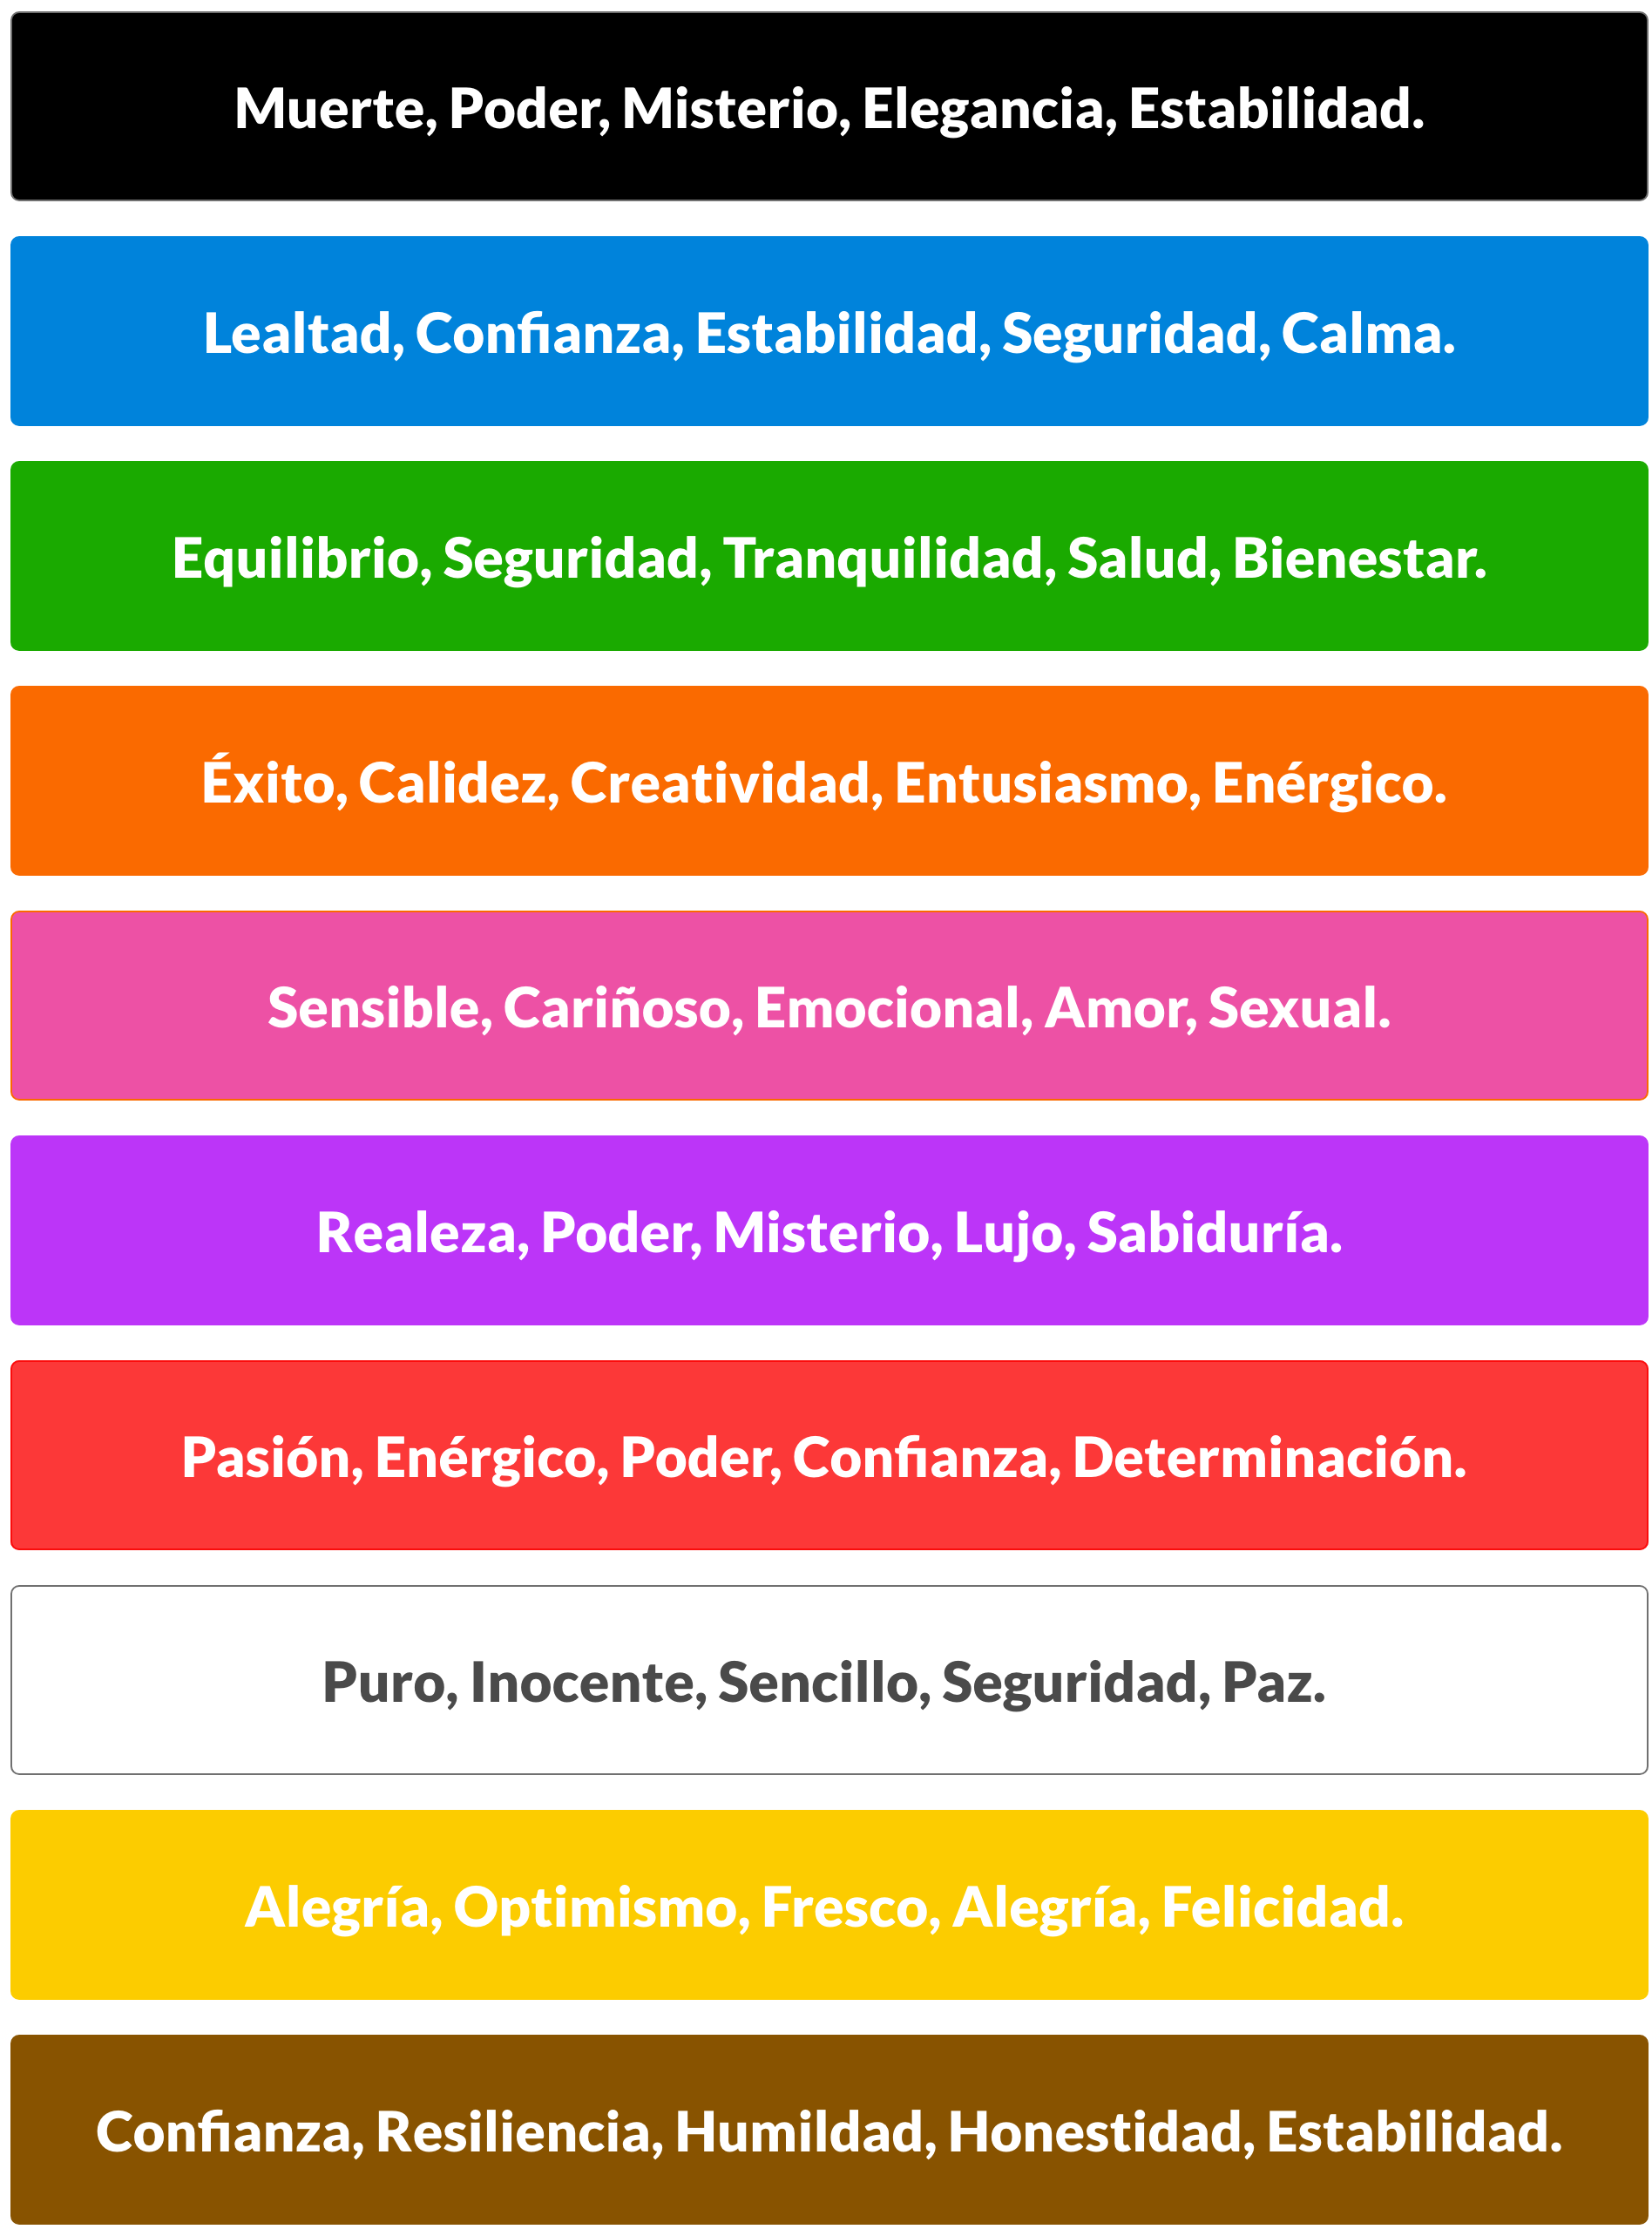 ¿Qué significan los colores?